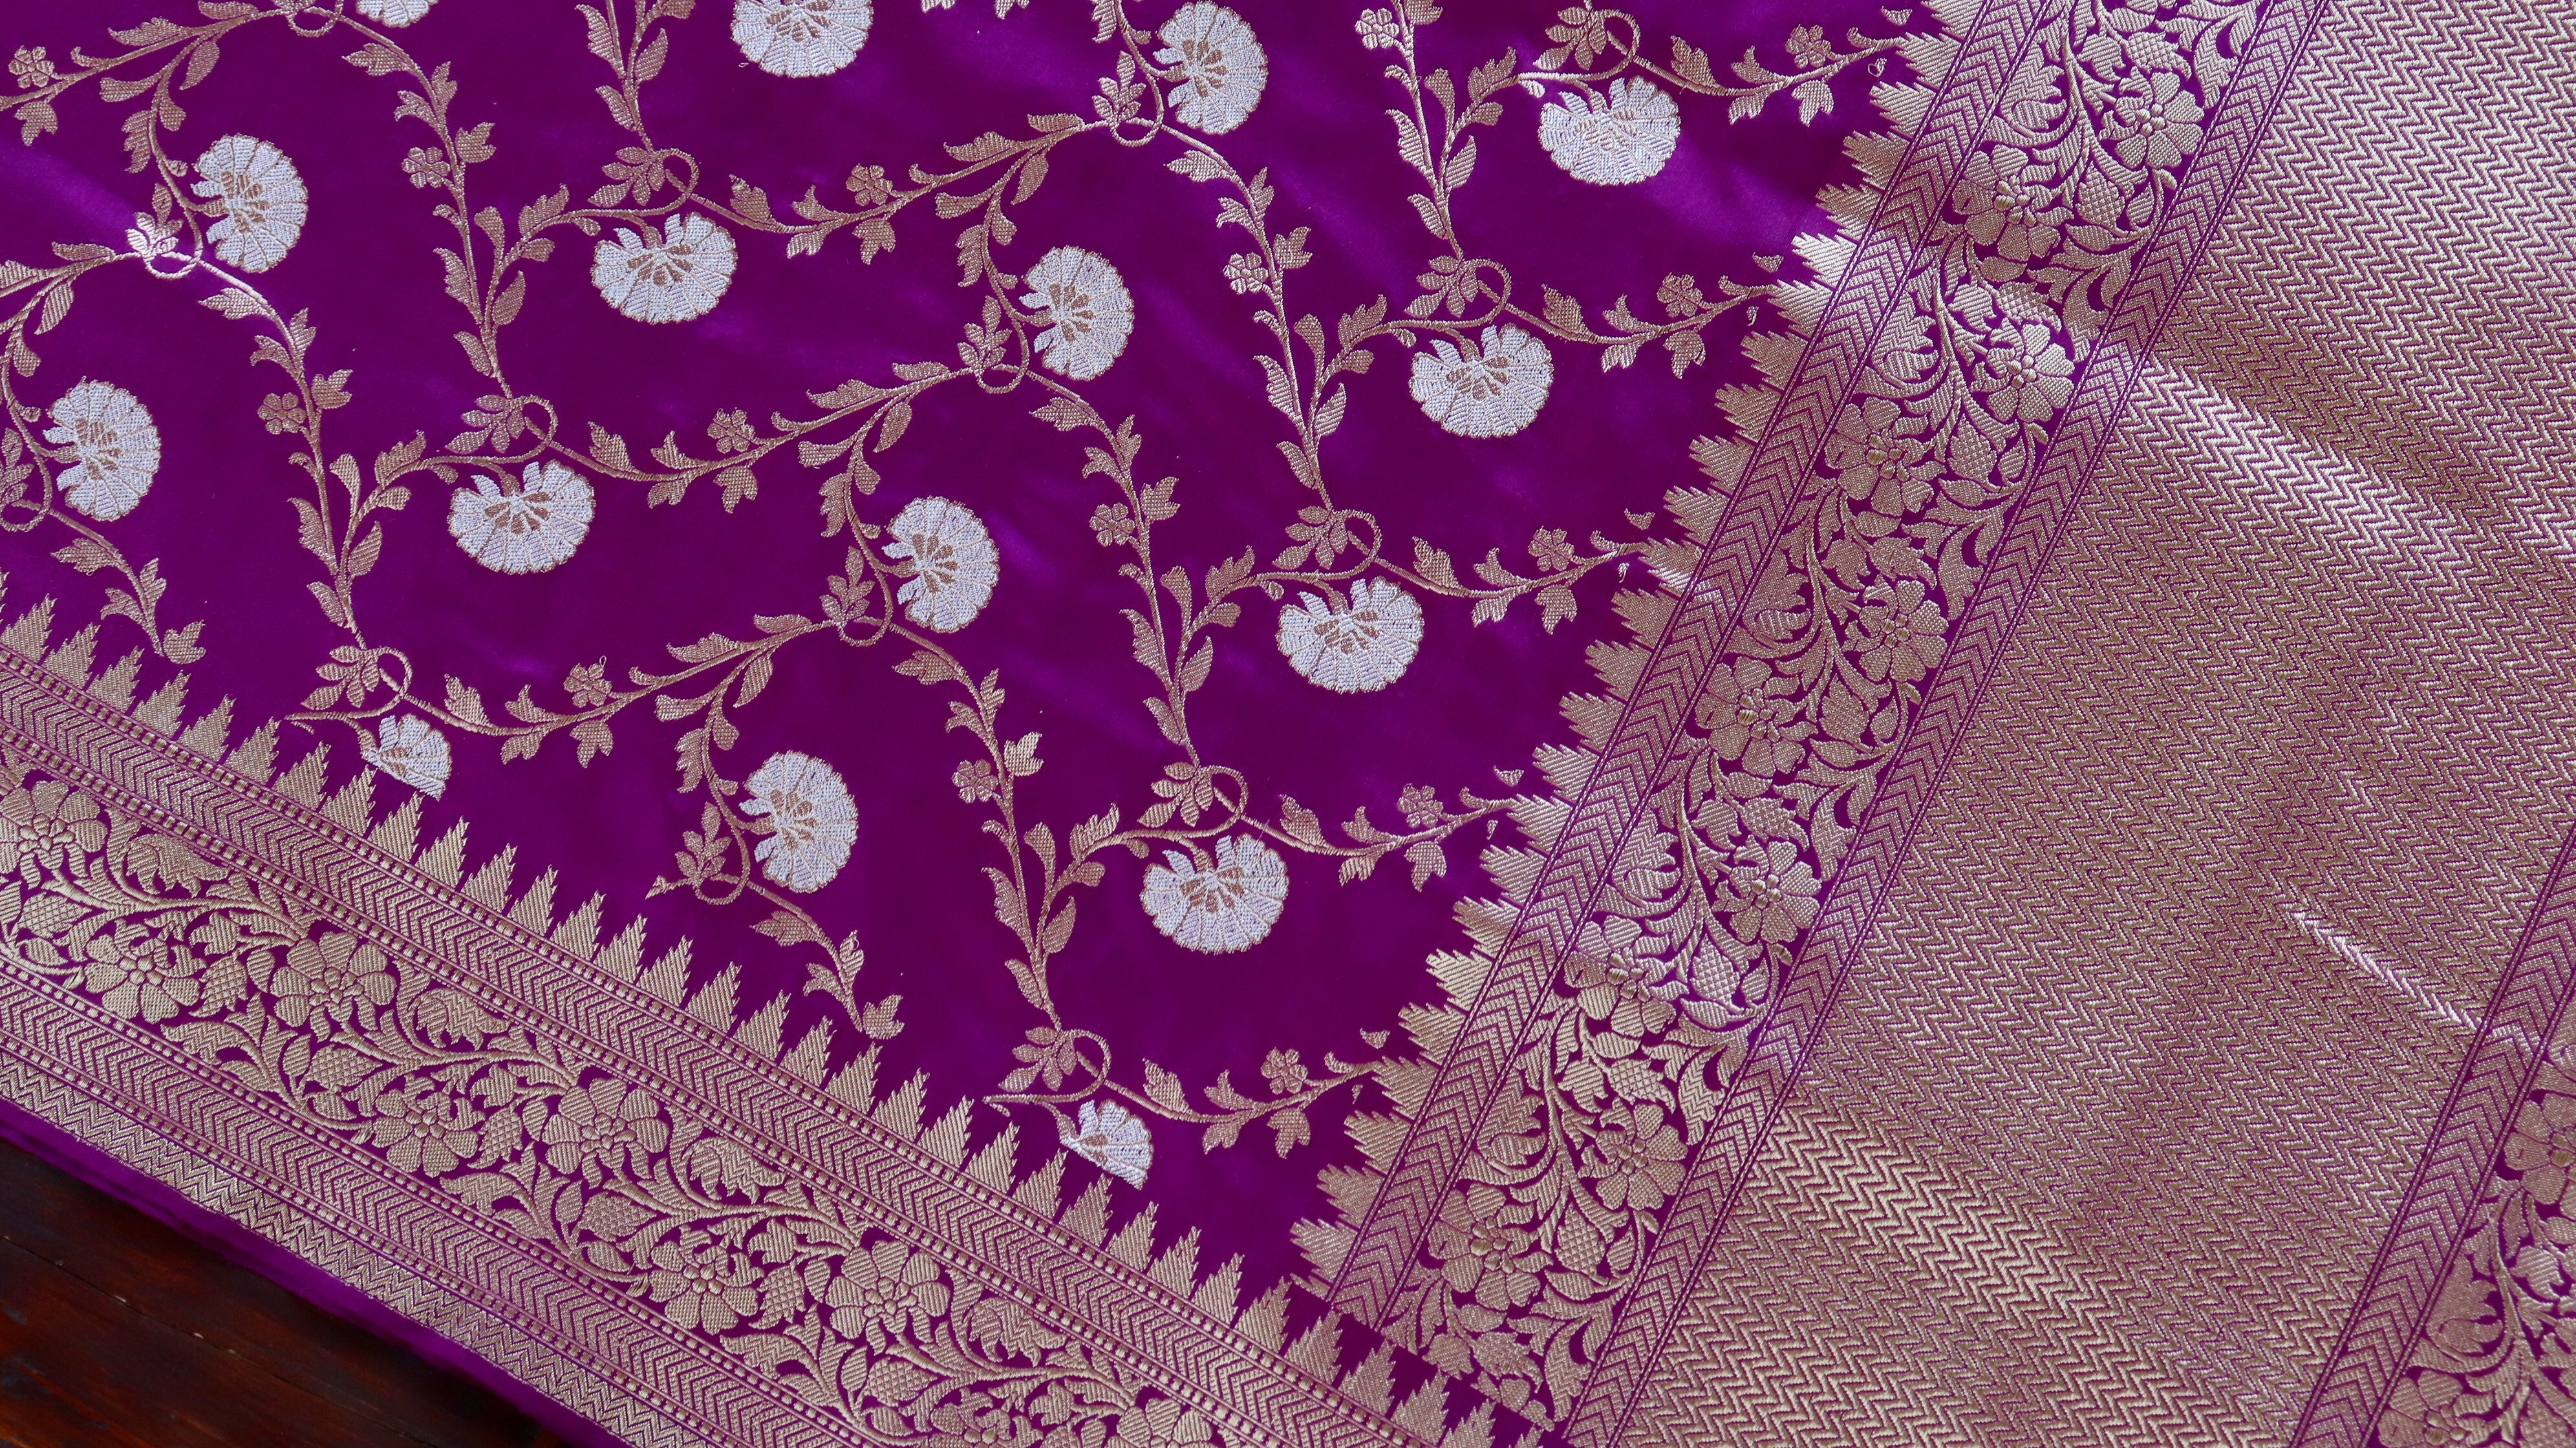 Handloom, Banarasi Handloom Saree, Alfi Saree, Tilfi Saree, Tilfi Saree Banaras, Tilfi, Banarasi Bunkar, Banarasi Bridal Wear, BridalWear, Banarasi Handloom Banarasi Purple Jangla Pure Silk Handloom Banarasi Dupatta Banarasi Saree